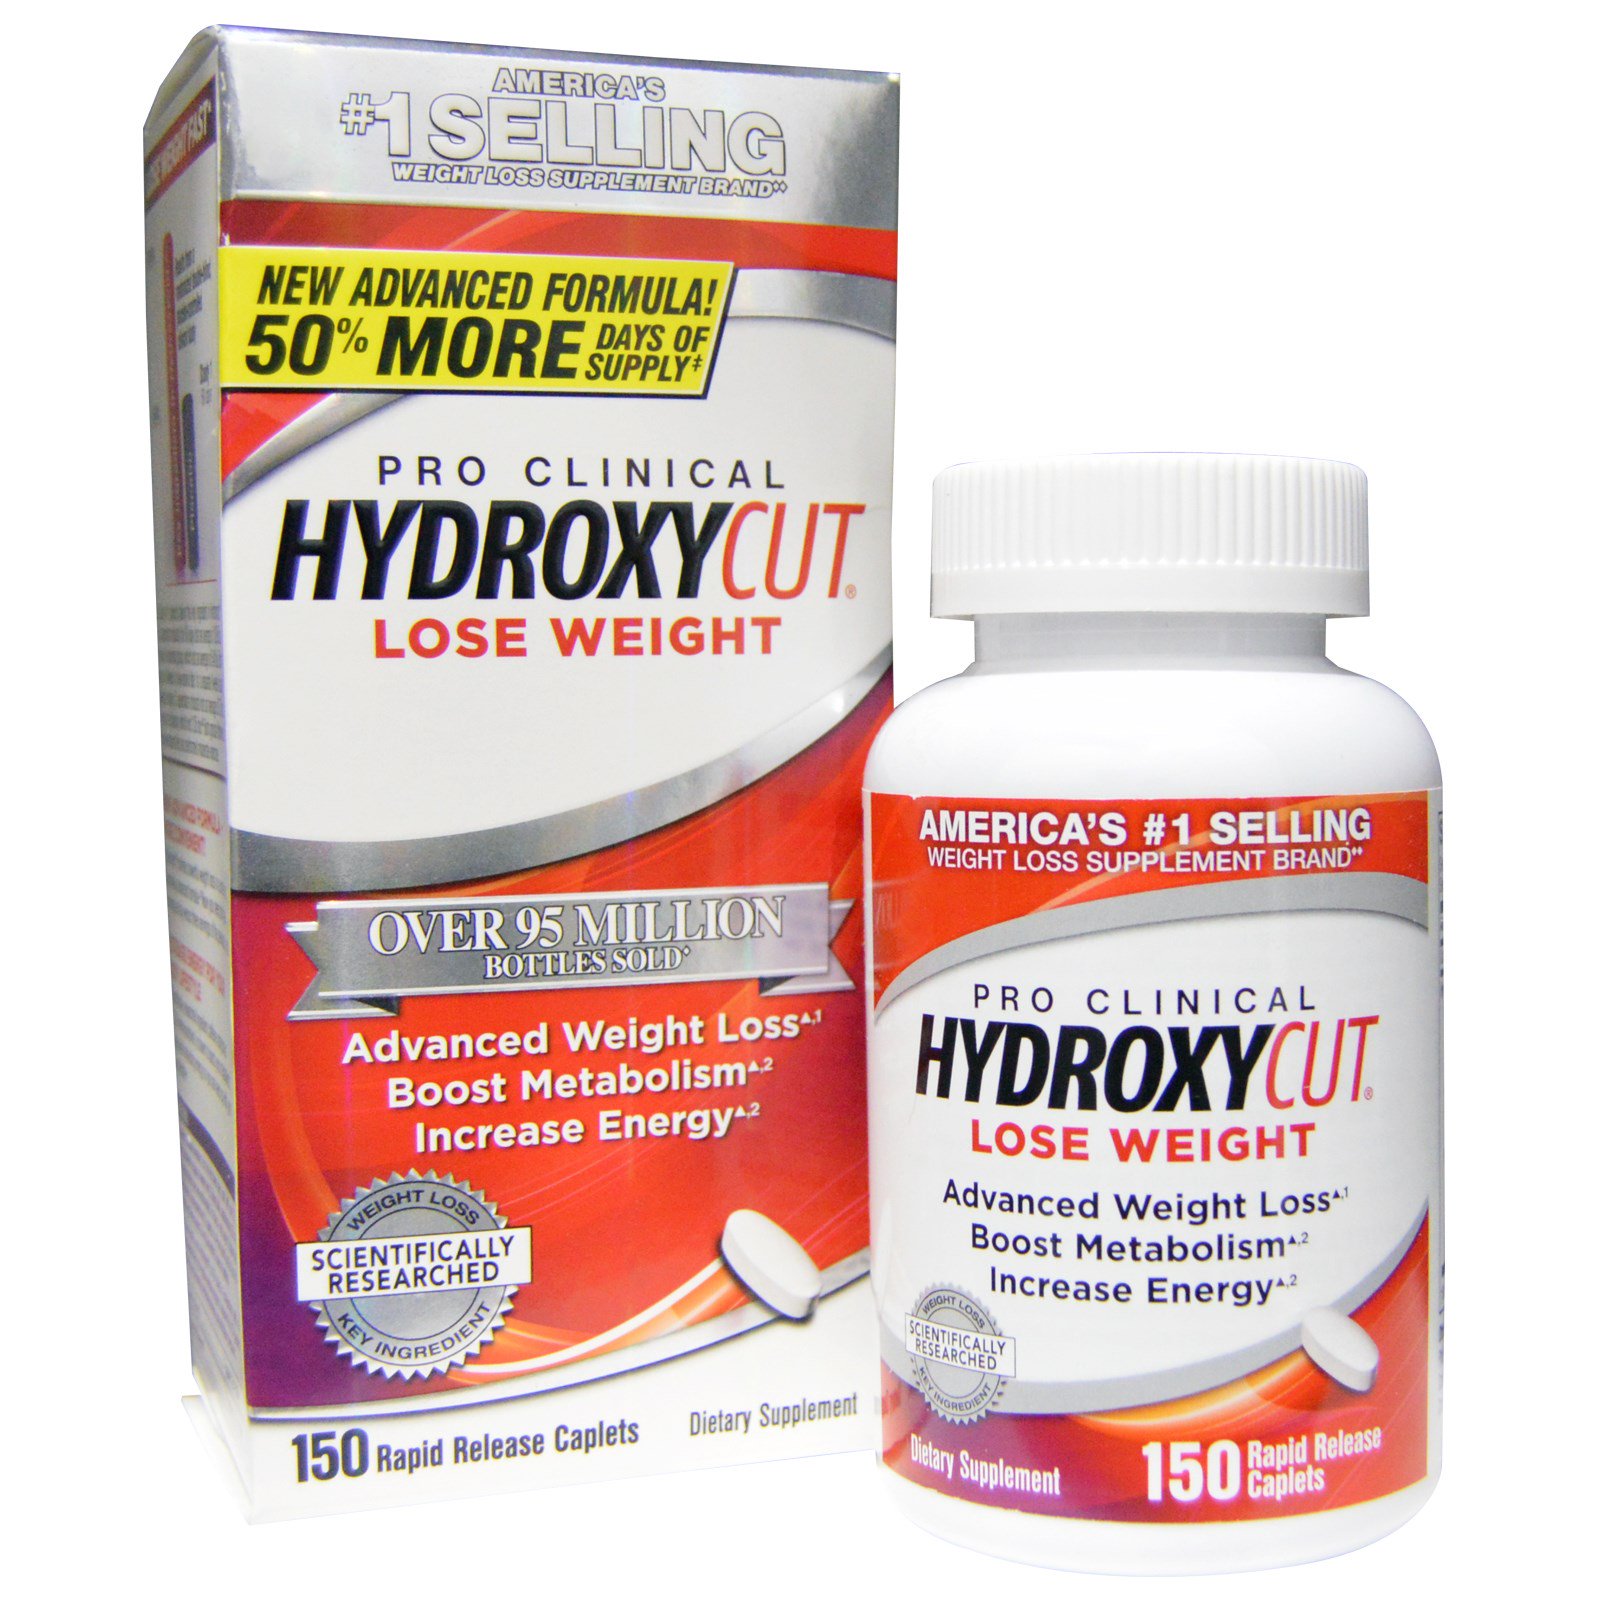 Viên uống giảm cân không chất kích thích Hydroxycut Pro Clinical